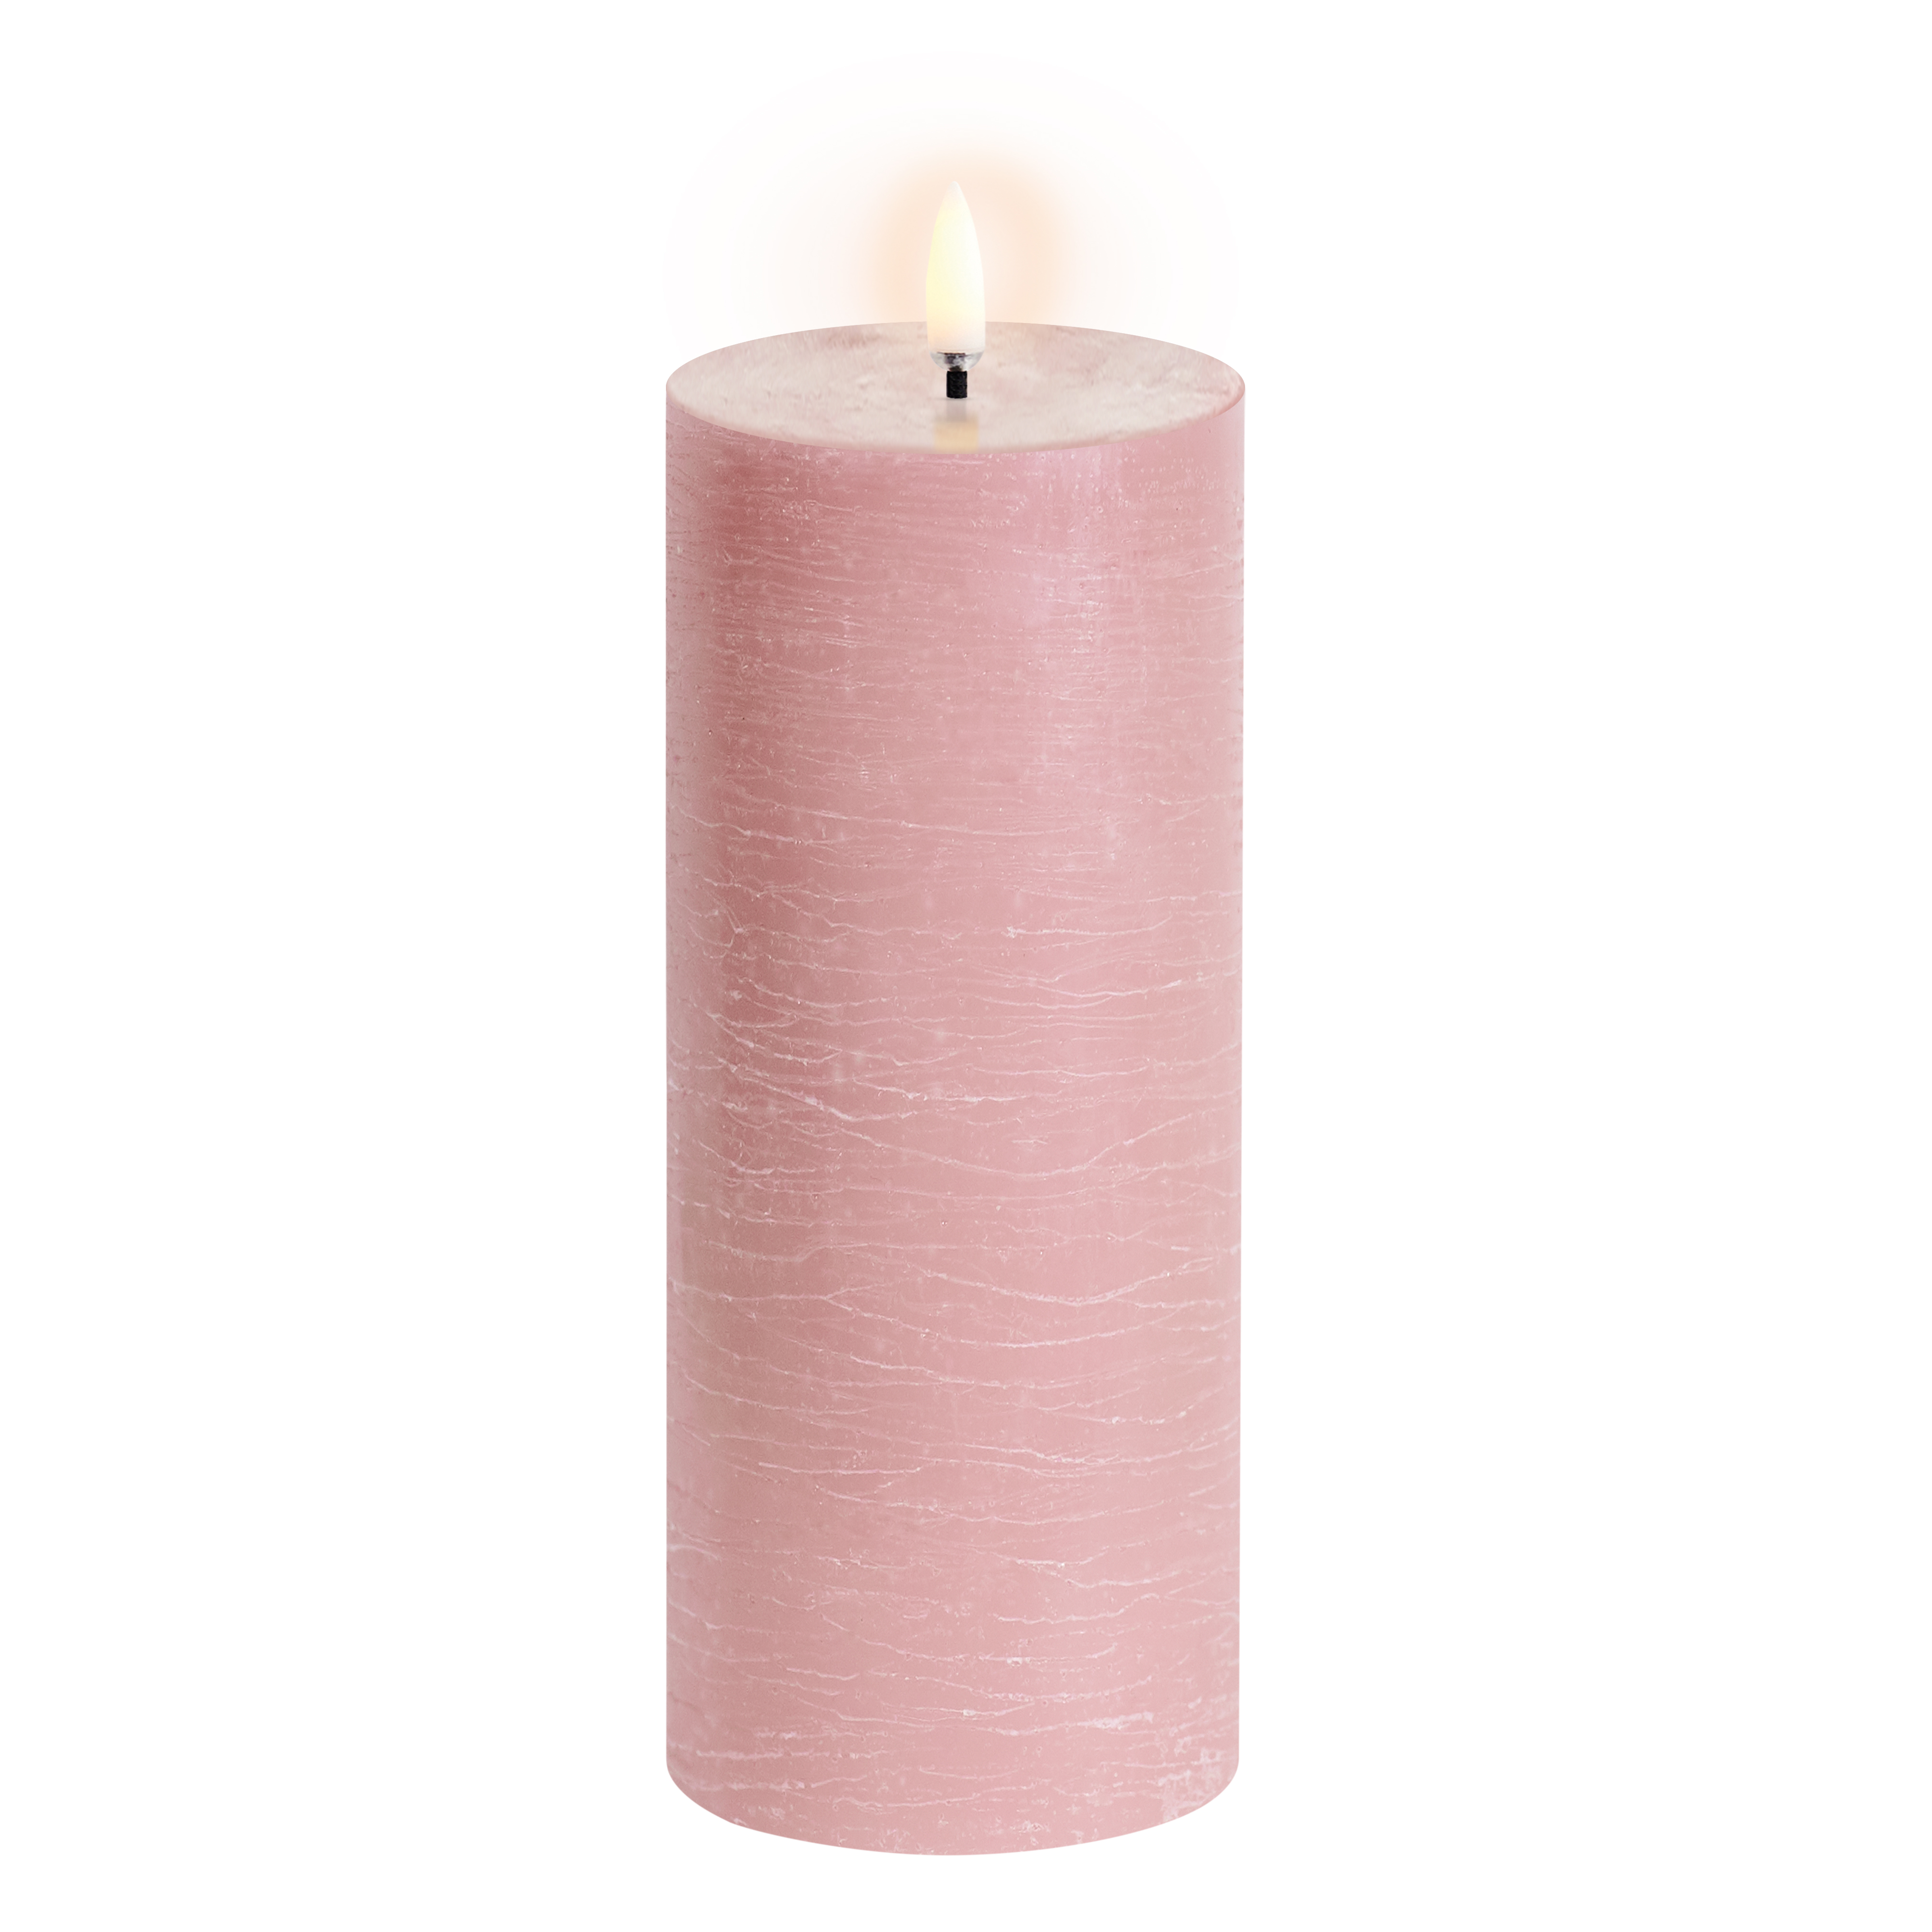 Uyuni - LED pillar candle - Dusty rose, Rustic - 7,8x20 cm (UL-PI-DR-C78020)